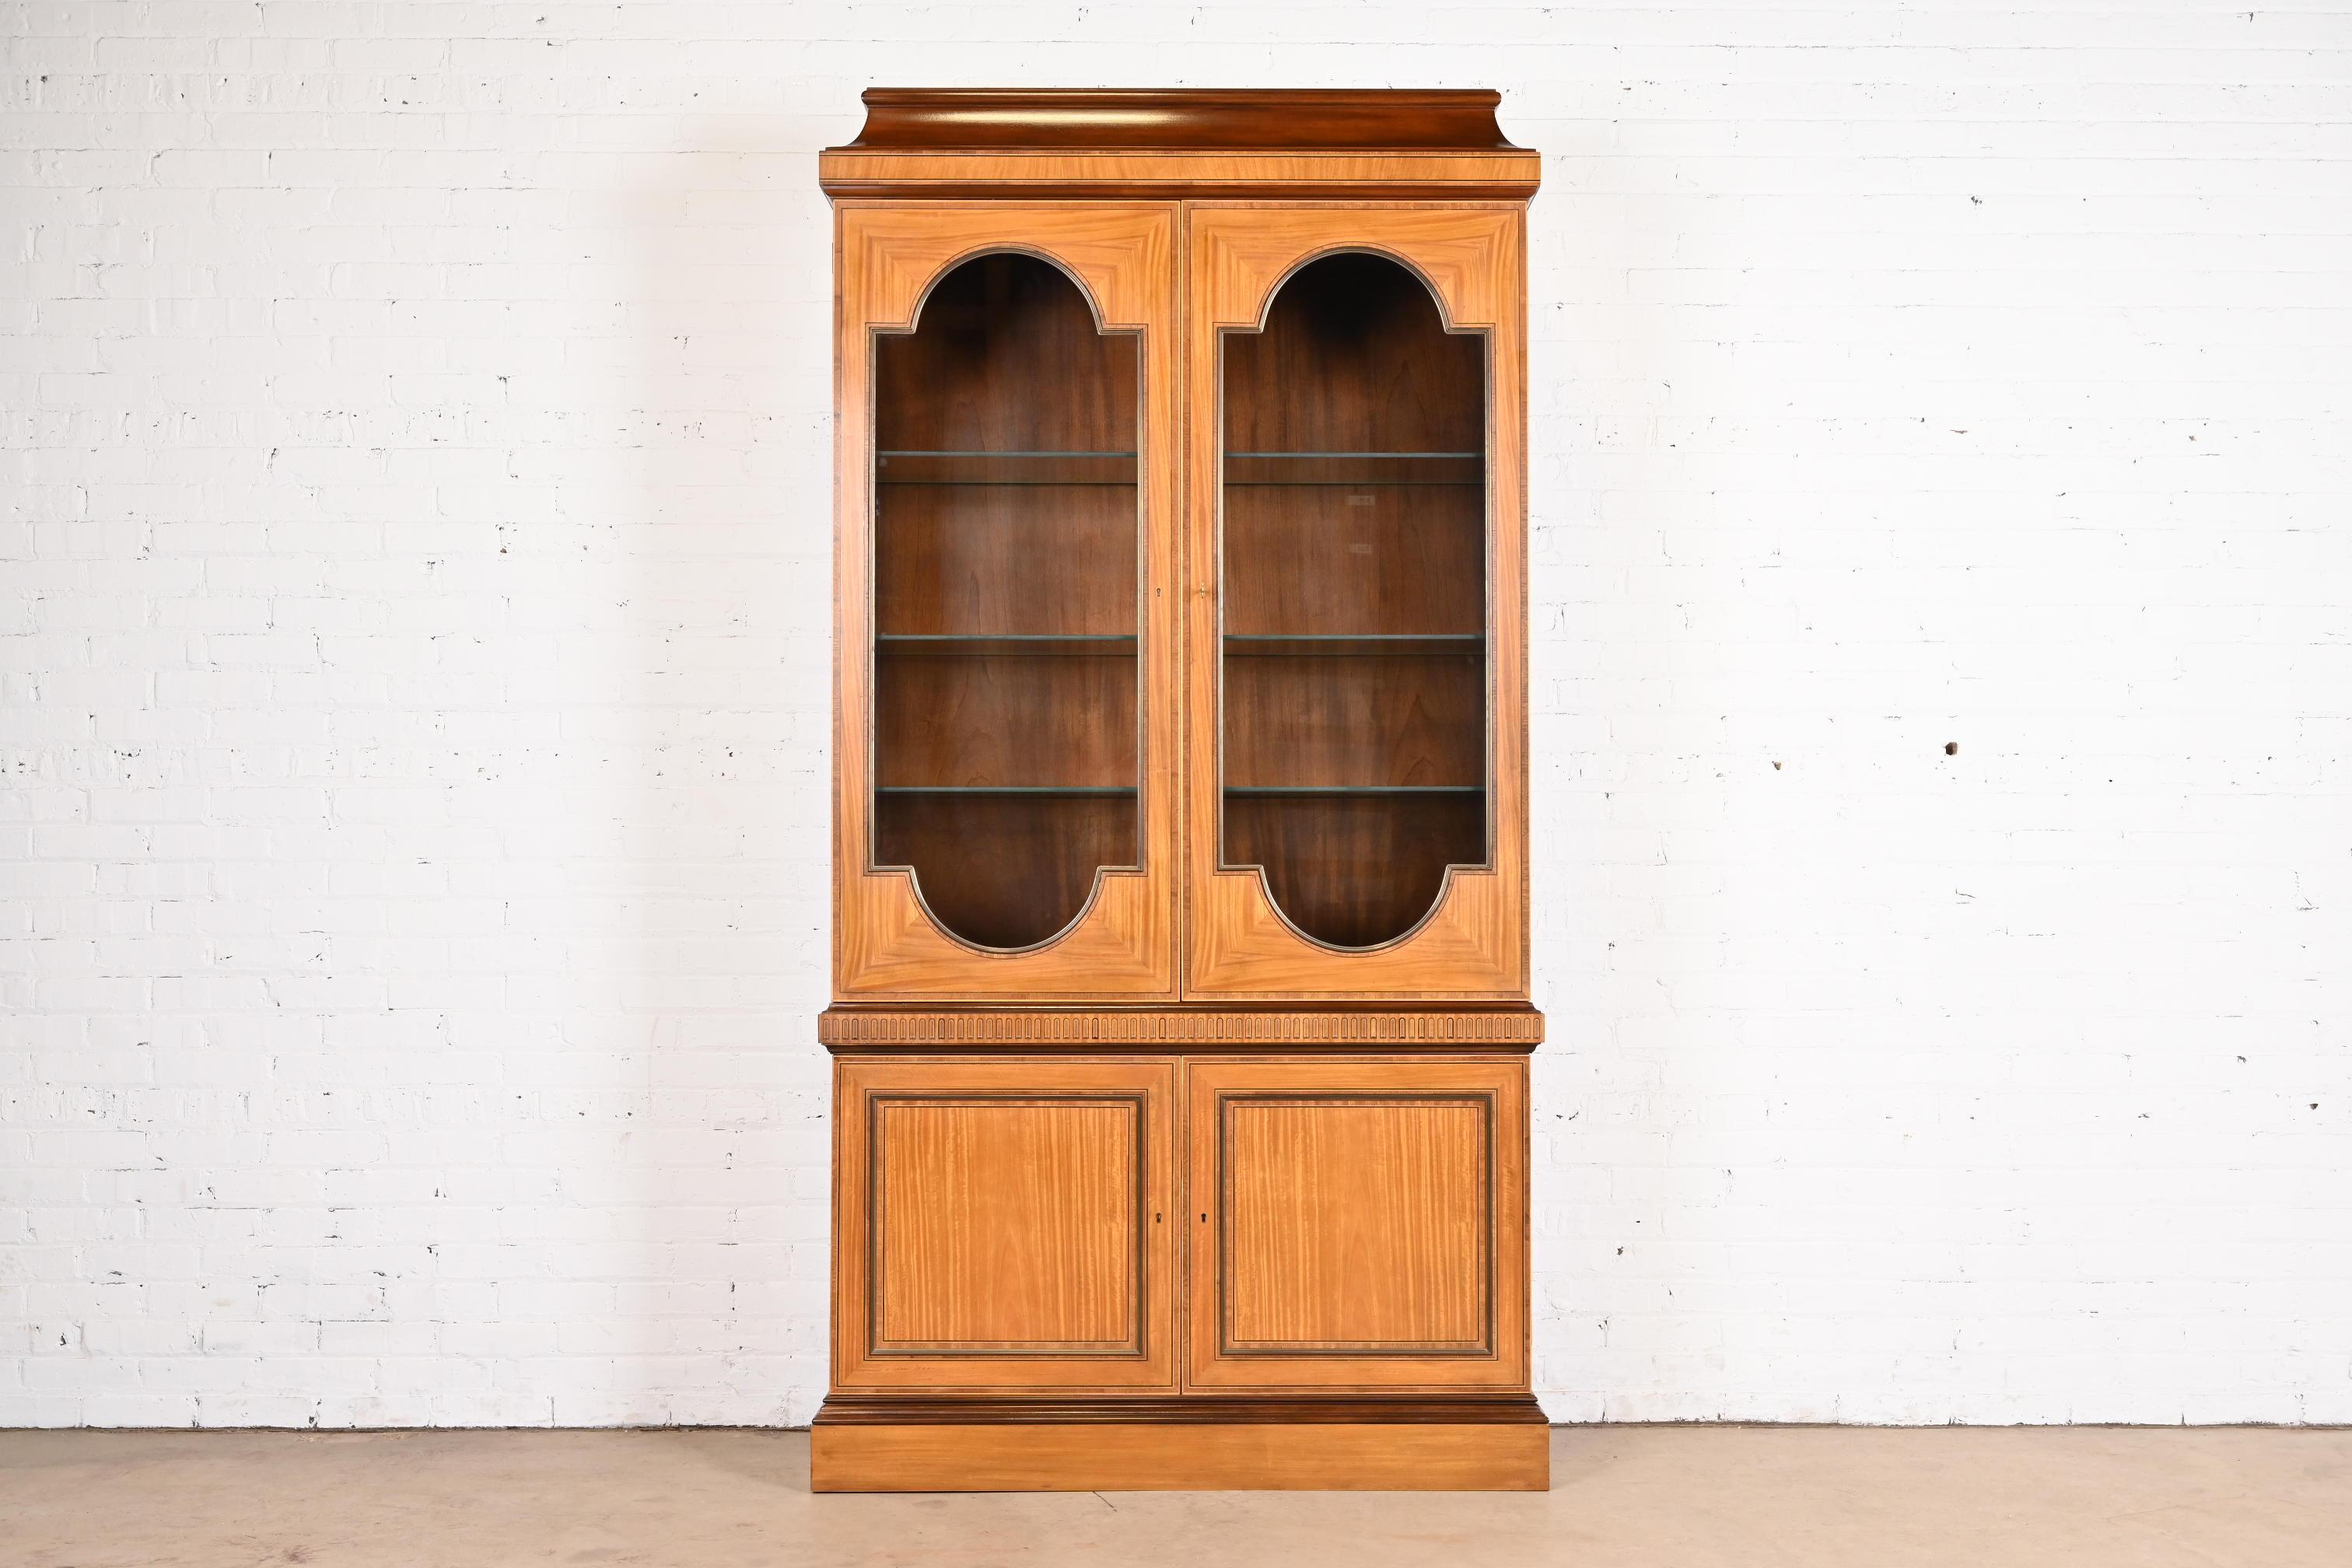 Ein wunderschönes Bücherregal oder ein Esszimmerschrank im neoklassischen oder georgianischen Stil

Von Baker Furniture

USA, Ende des 20. Jahrhunderts

Schönes Satinholz und Mahagoni, mit Ebenholzeinlagen und Glastüren. Der Schrank ist